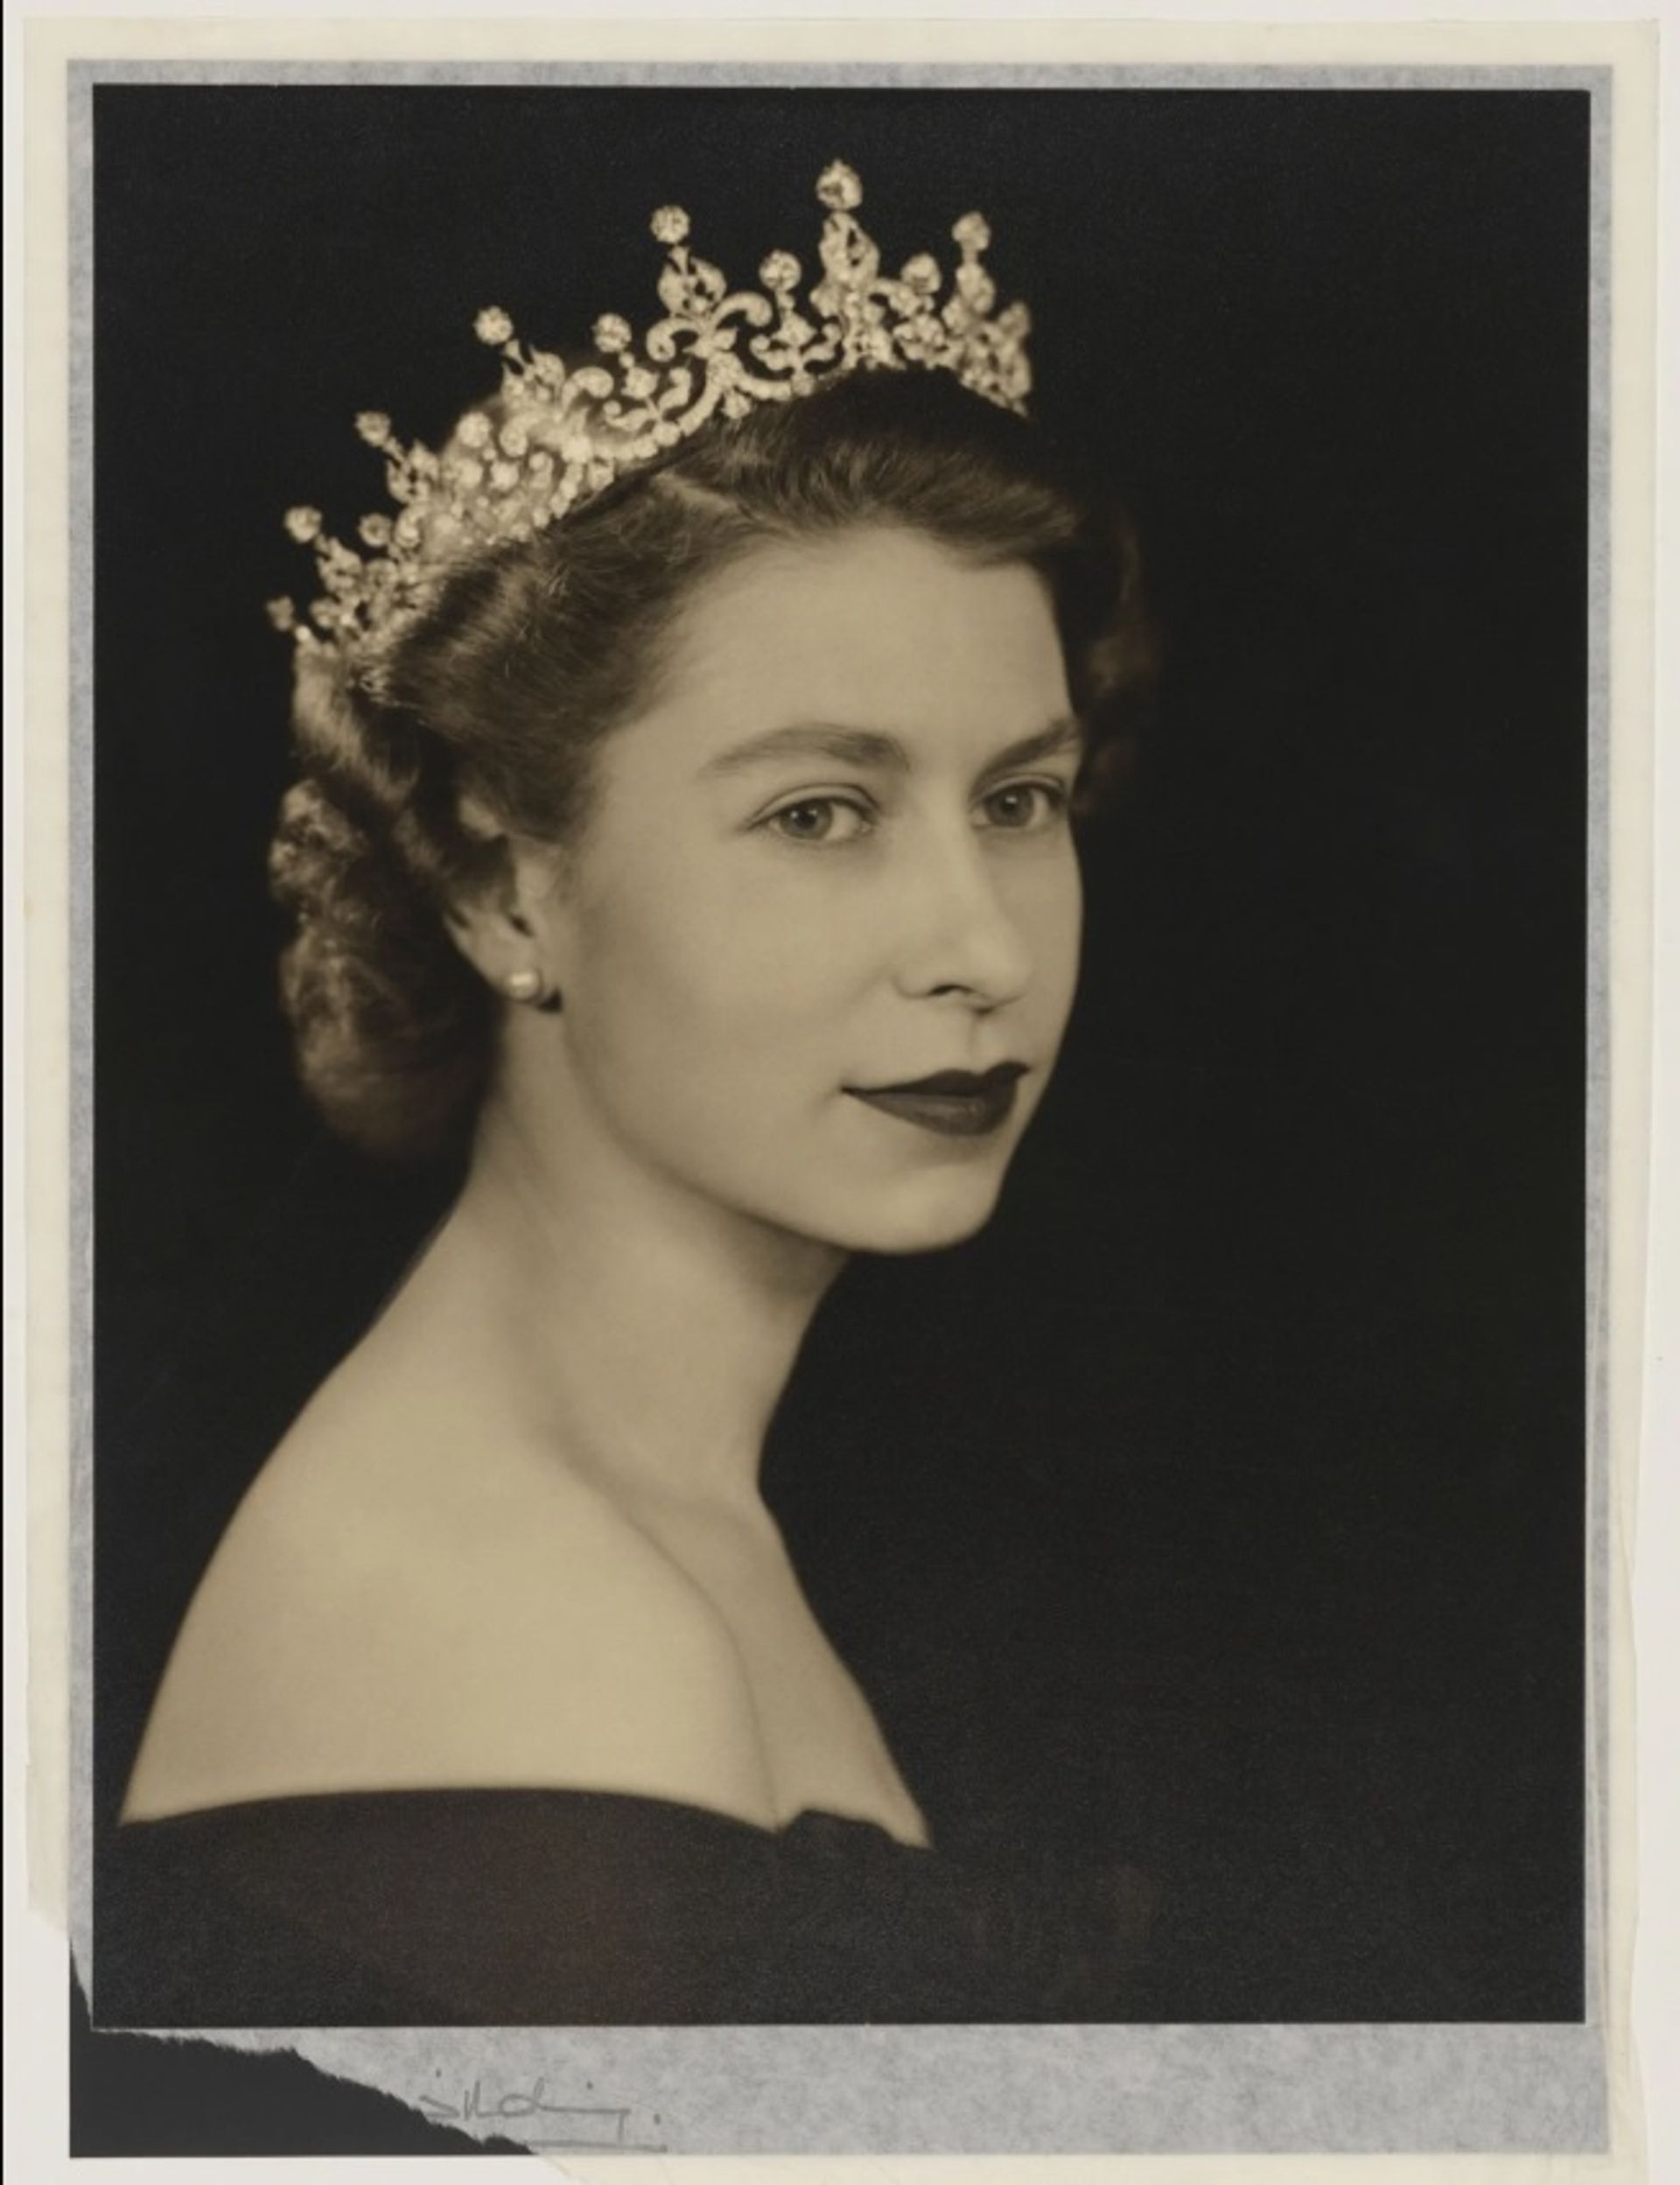 המלכה אליזבת השנייה מאת דורותי וילדינג, 26 בפברואר 1952

© National Portrait Gallery, לונדון